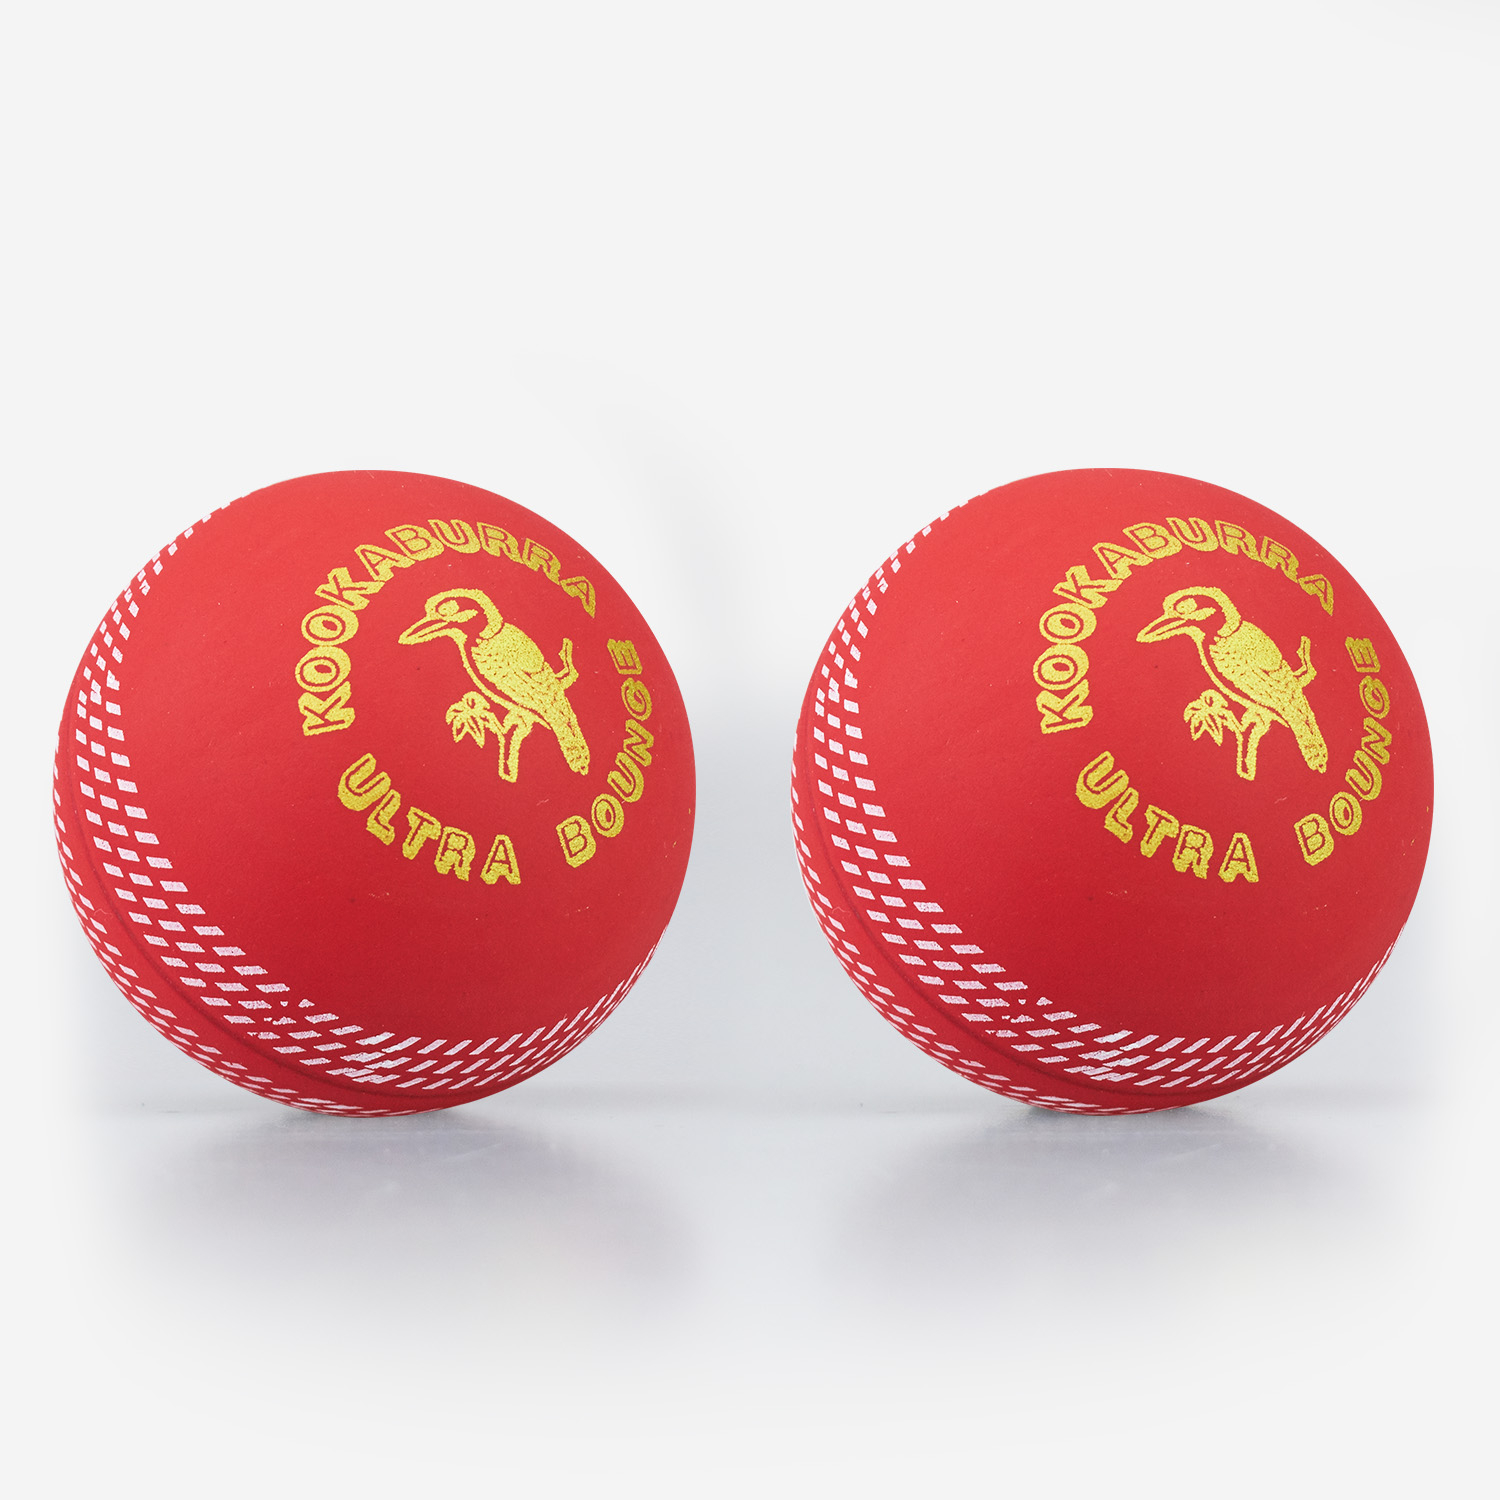 Kookaburra Ultra Bounce Red Cricket Ball